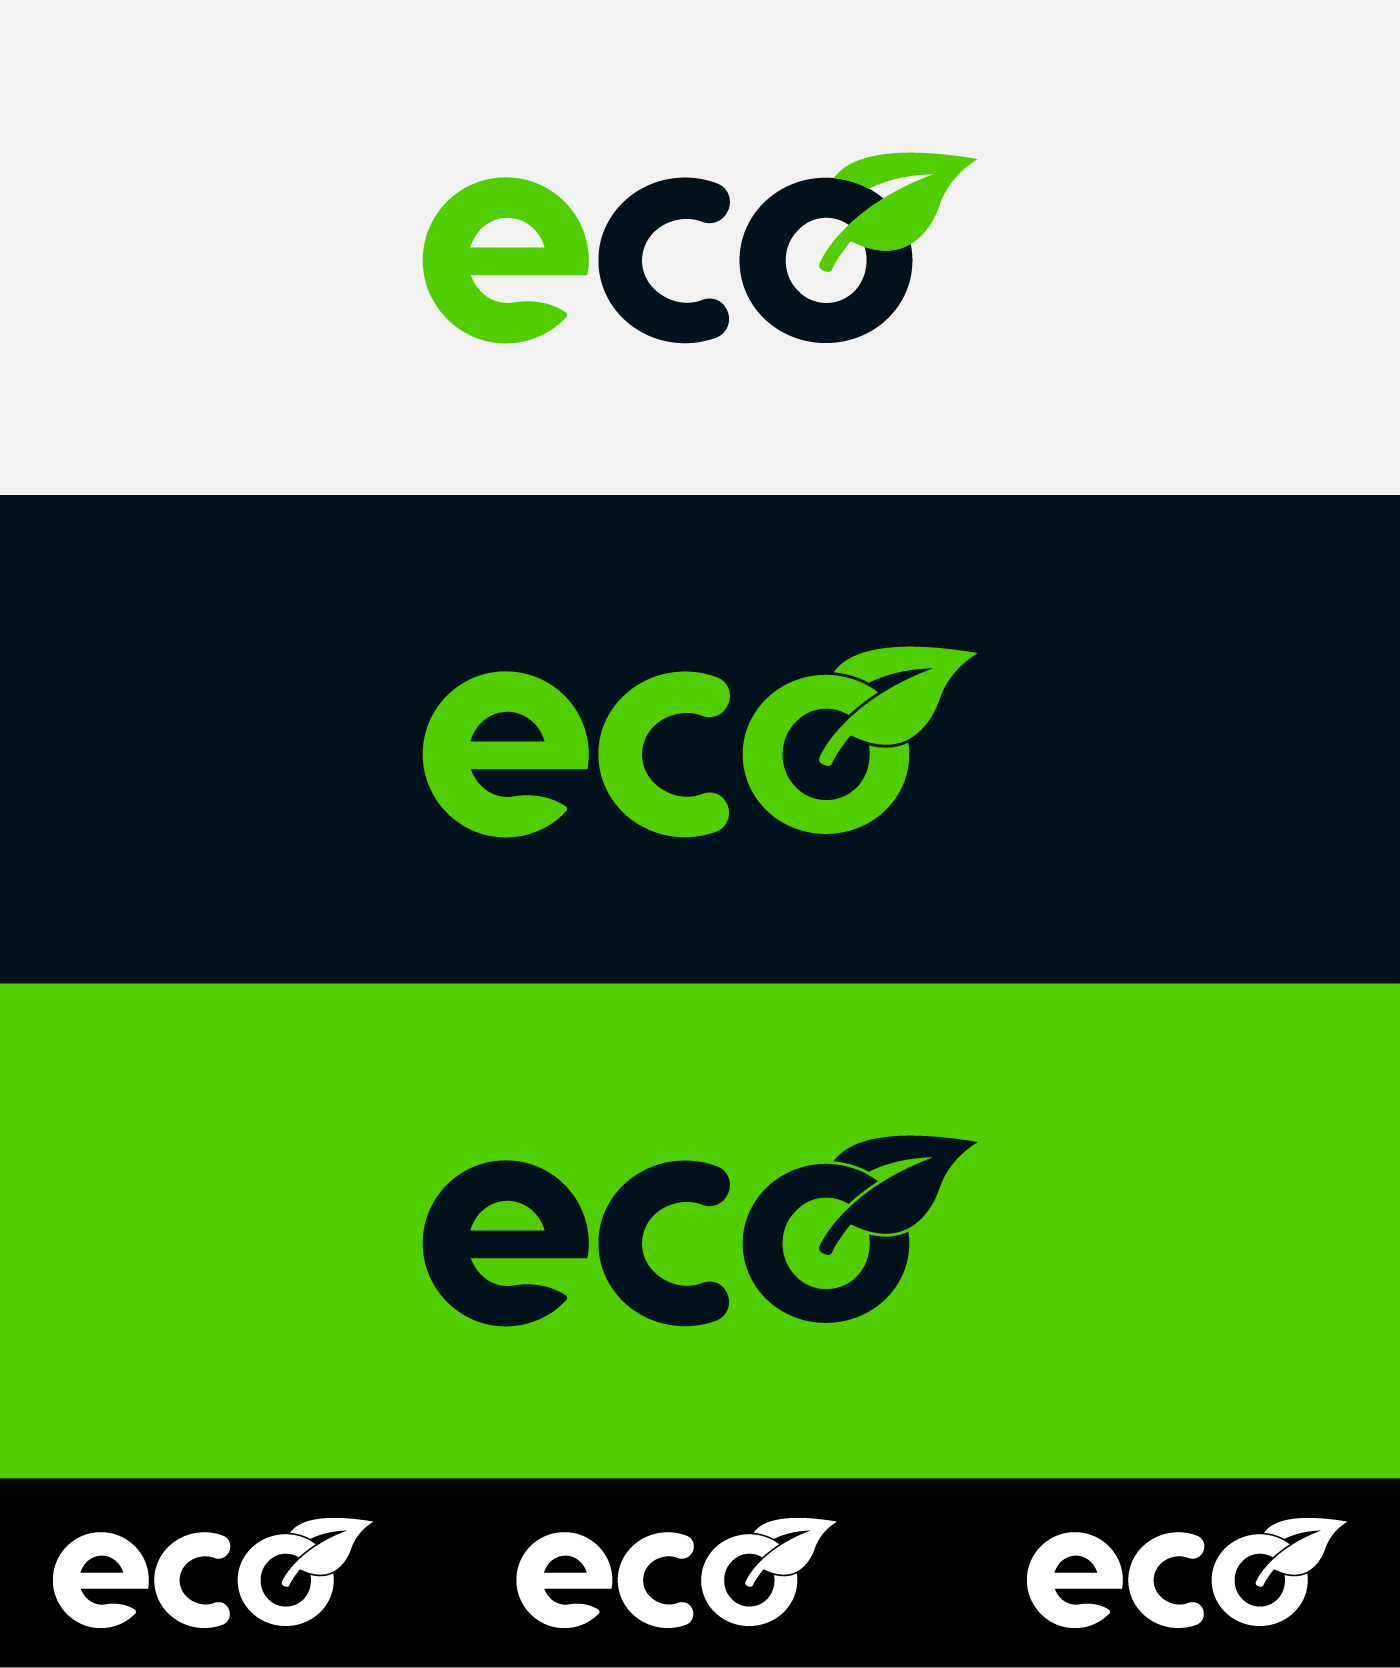 eco brand logo marca criação photoshop ecologic inspiration download andrevalentim